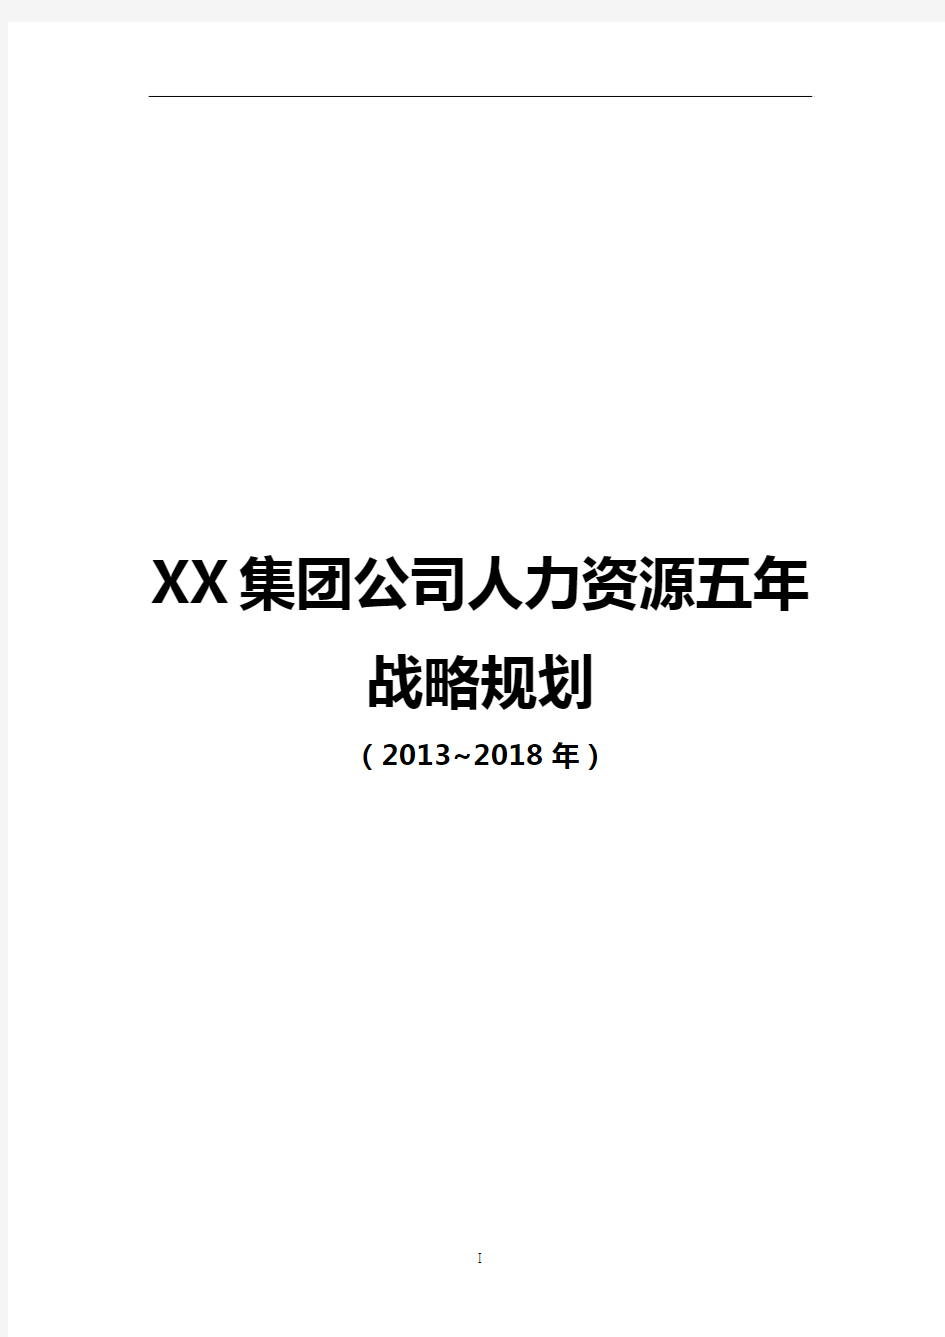 【最新】XX集团公司人力资源部五年战略规划项目建议书